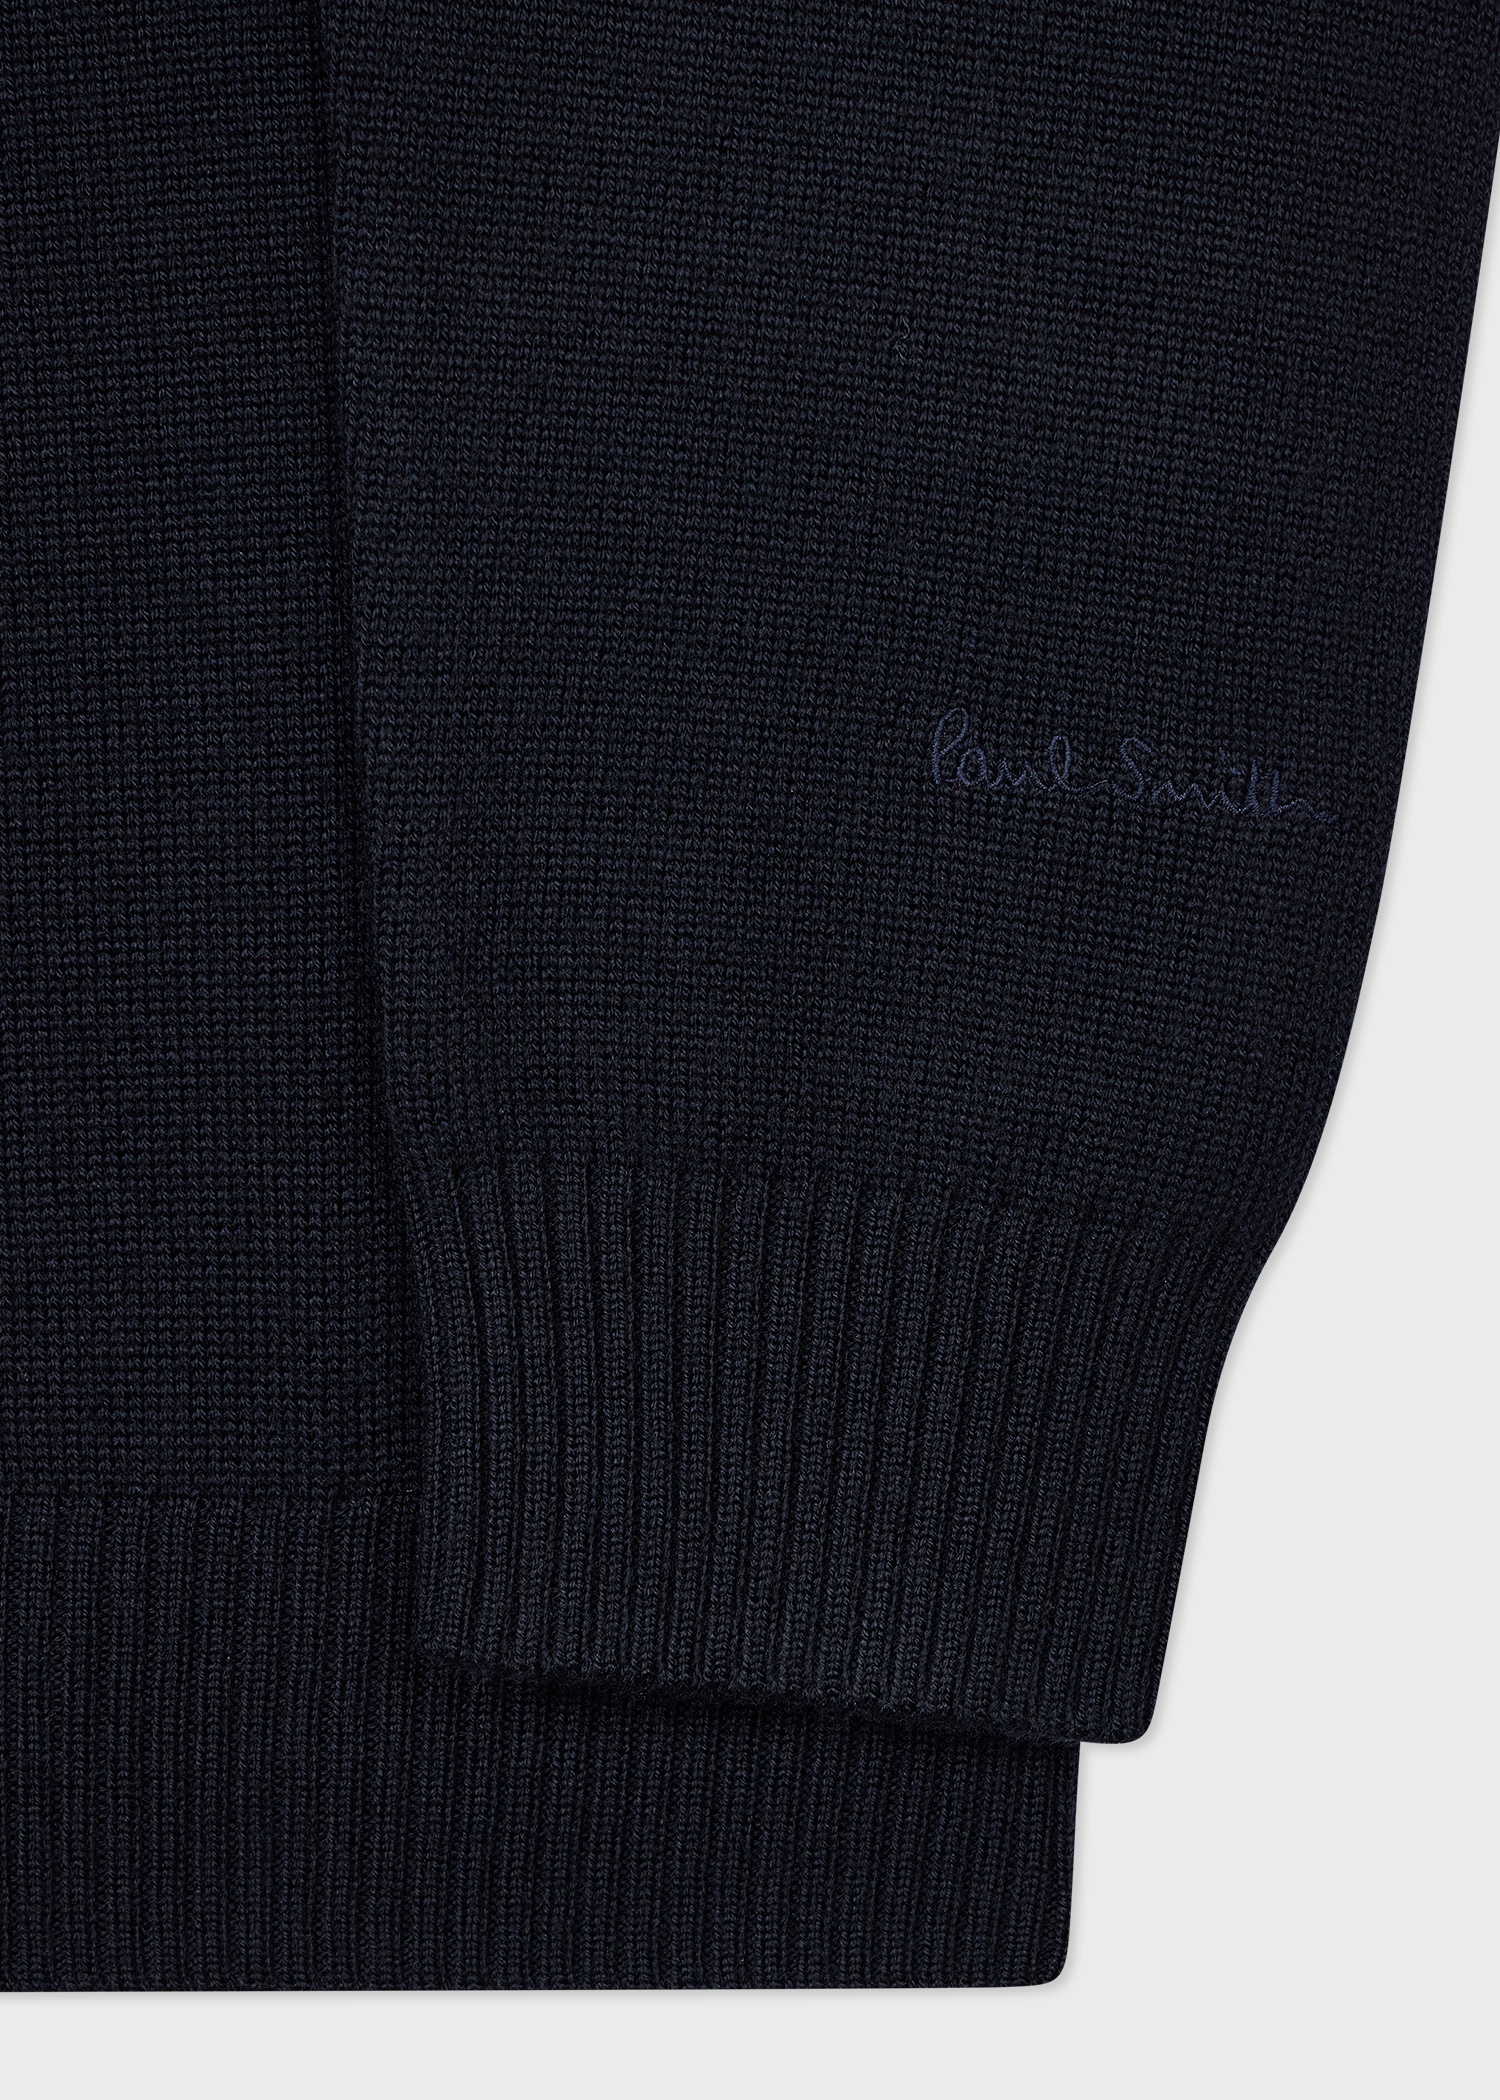 Dark Navy Merino Wool Roll Neck Sweater - 2